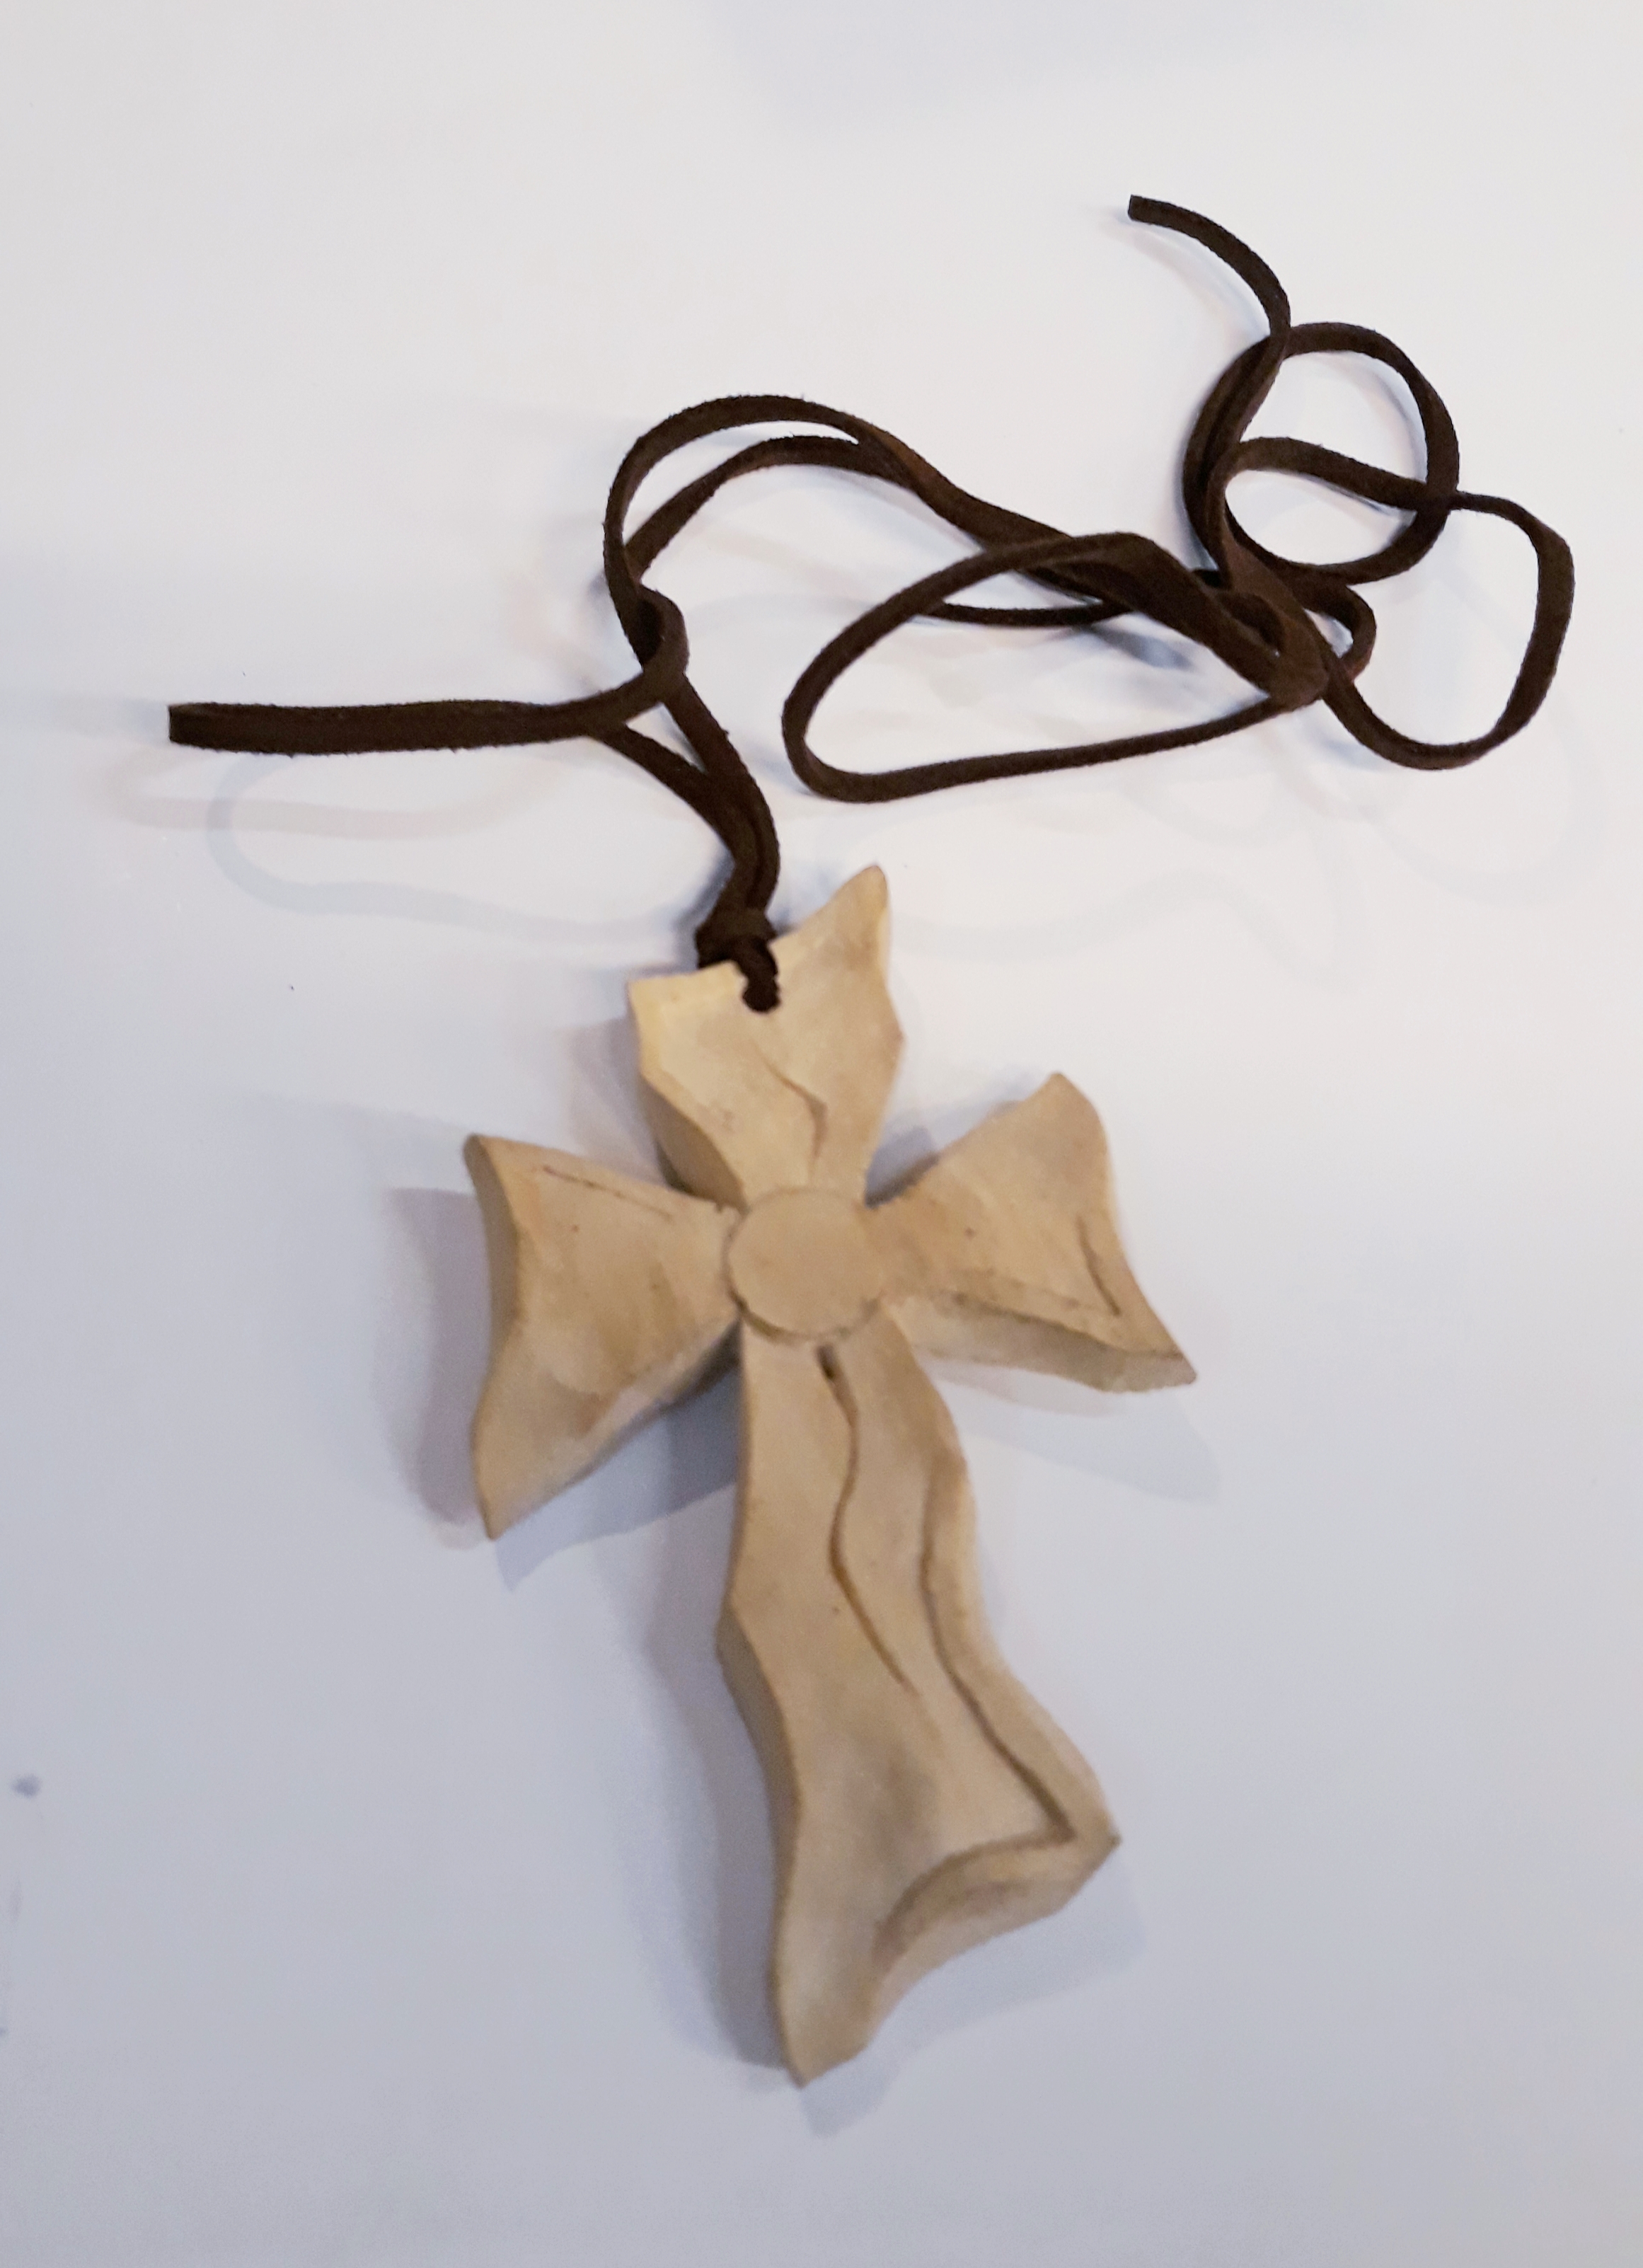 Křížek (dřevořezba)